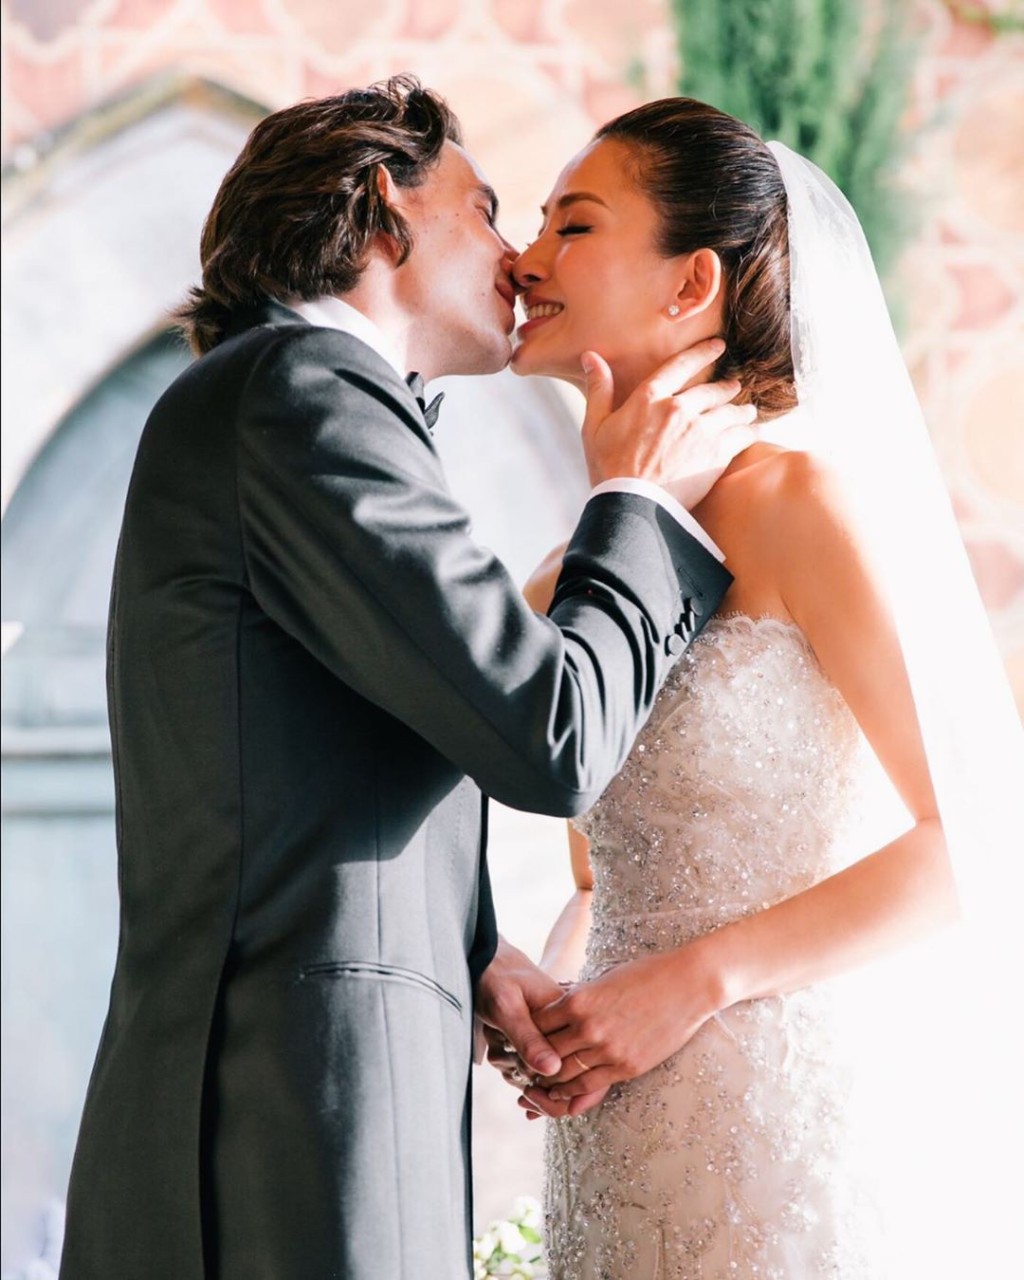 周汶锜分享令她感到最浪漫的一刻是婚礼上的一吻。